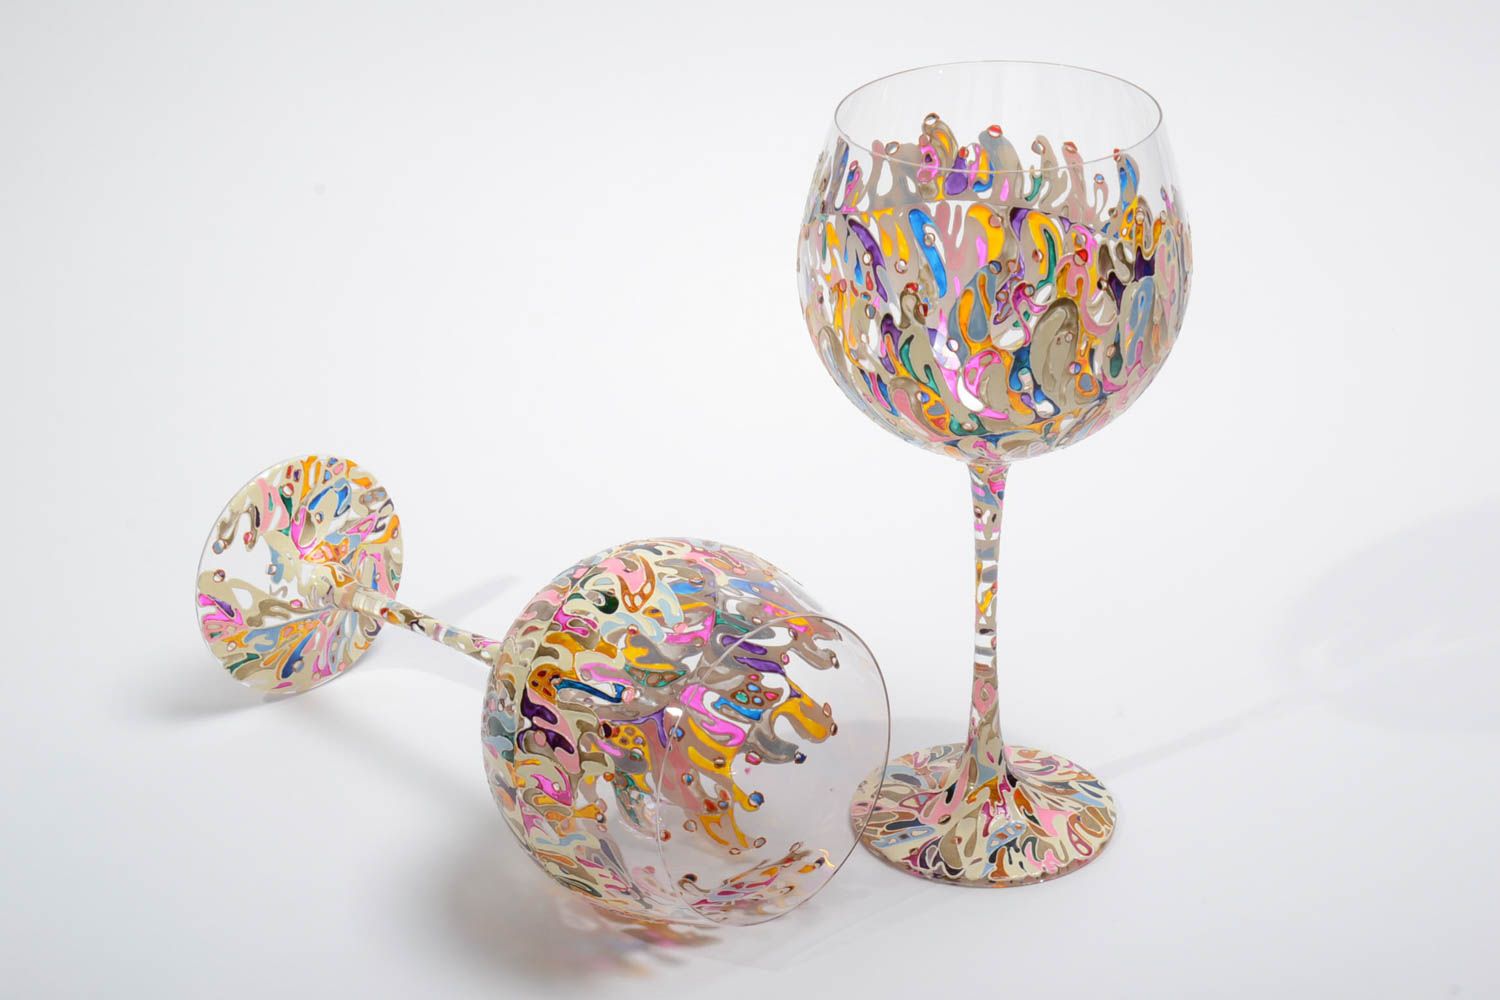 Unique wine glasses handmade 2 colored wine glasses 700 ml wedding gift idea photo 3